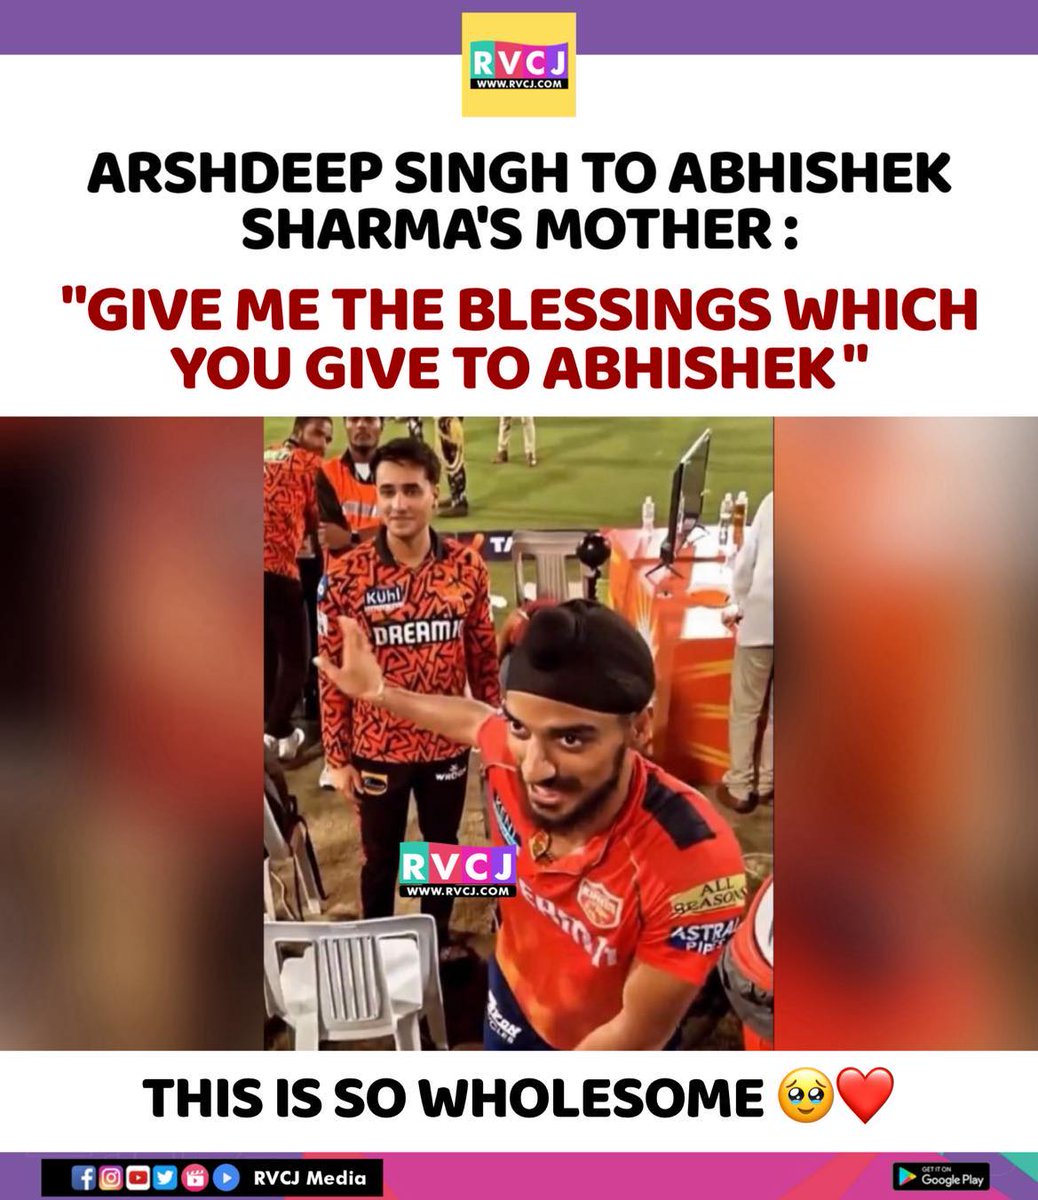 Arshdeep Singh
#arshdeepsingh #abhisheksharma